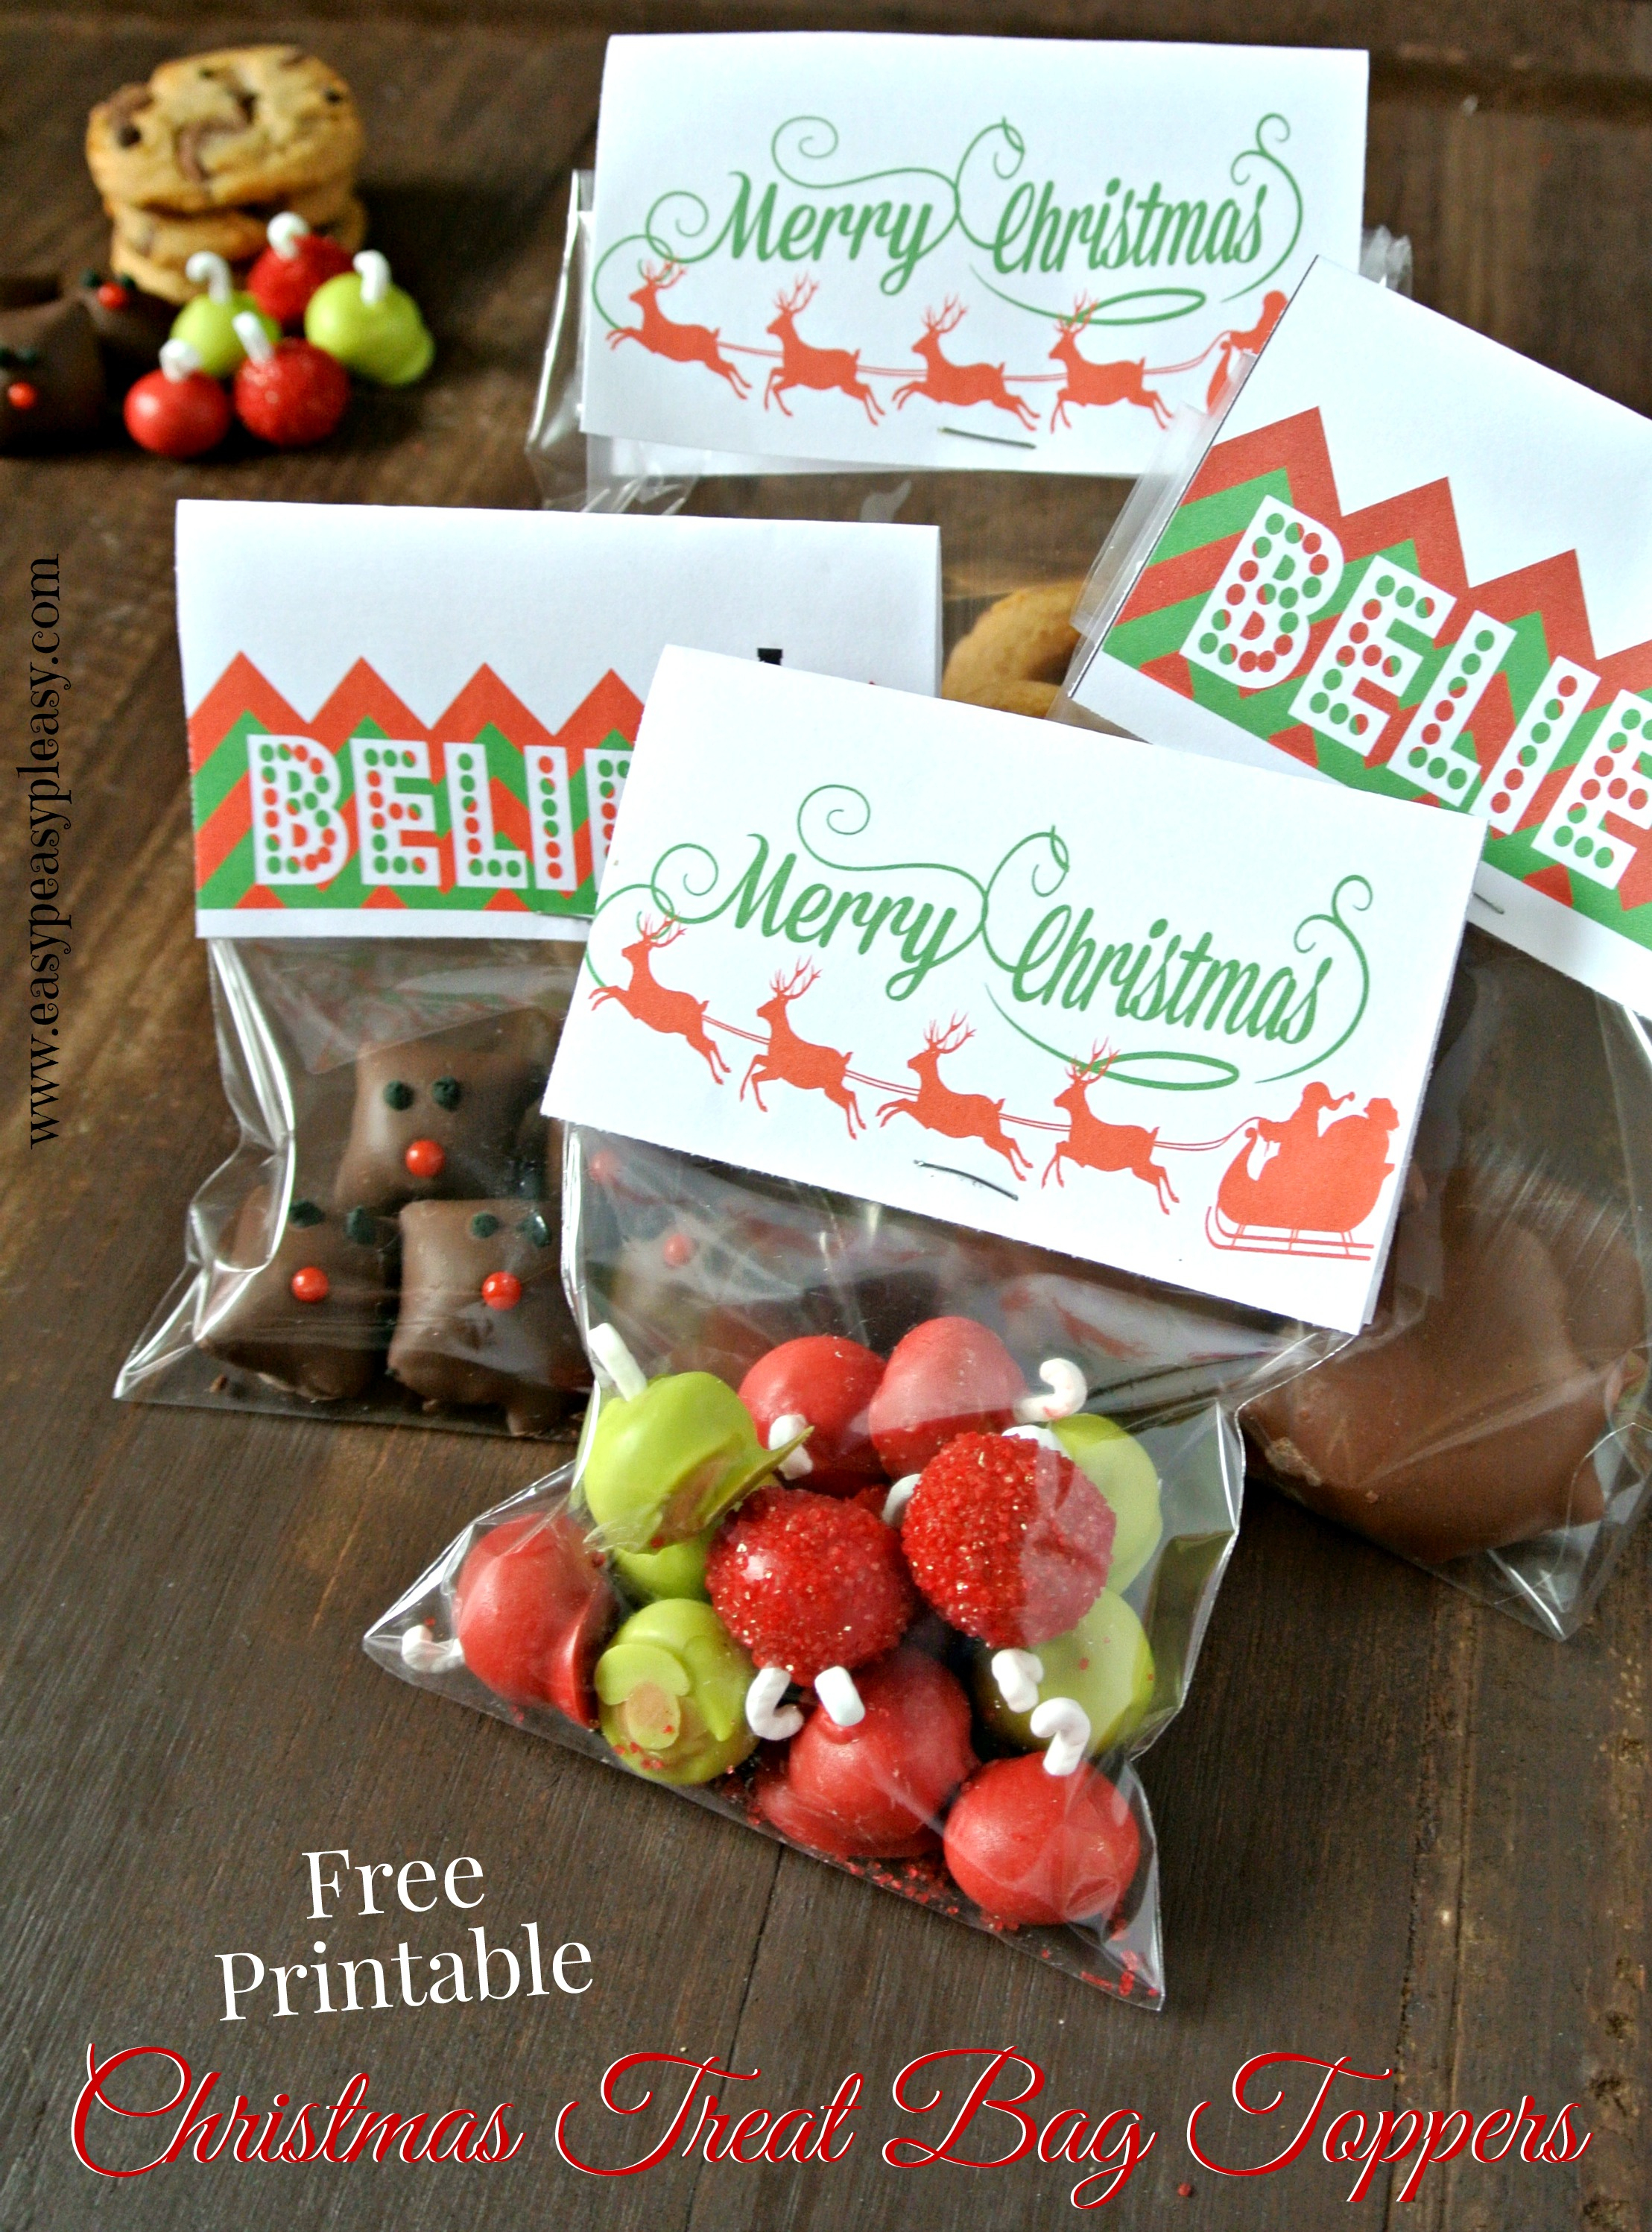 3 Free Printable Christmas Treat Bag Toppers - Easy Peasy Pleasy - Free Printable Christmas Bag Toppers Templates